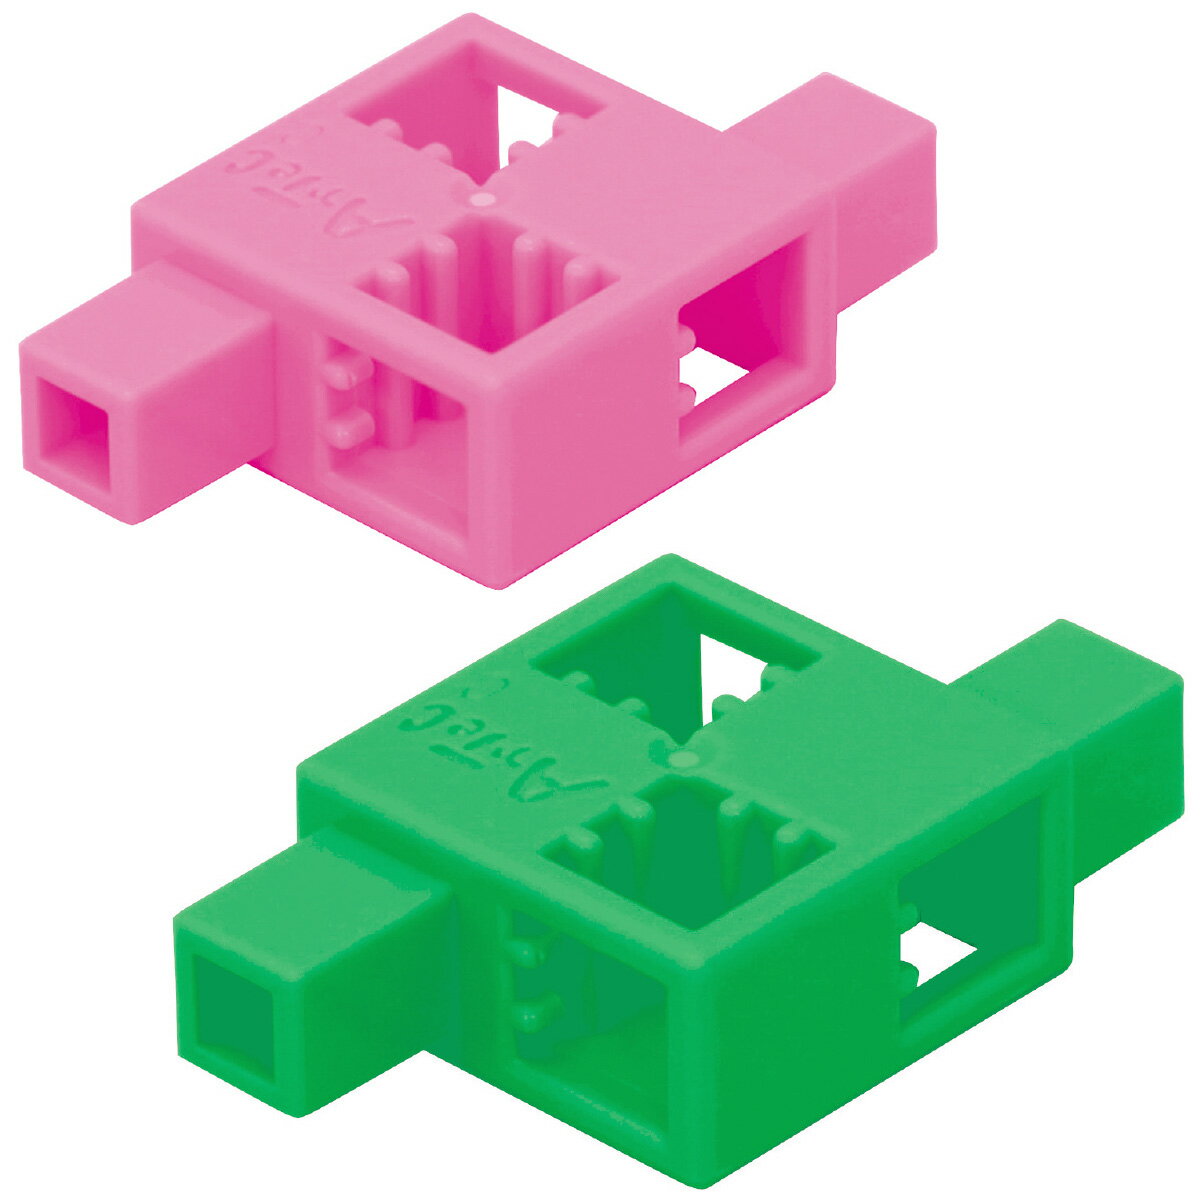 ブロック おもちゃ アーテックブロック ハーフD 8pcsセット 日本製 レゴ レゴブロックのように遊べます 室内